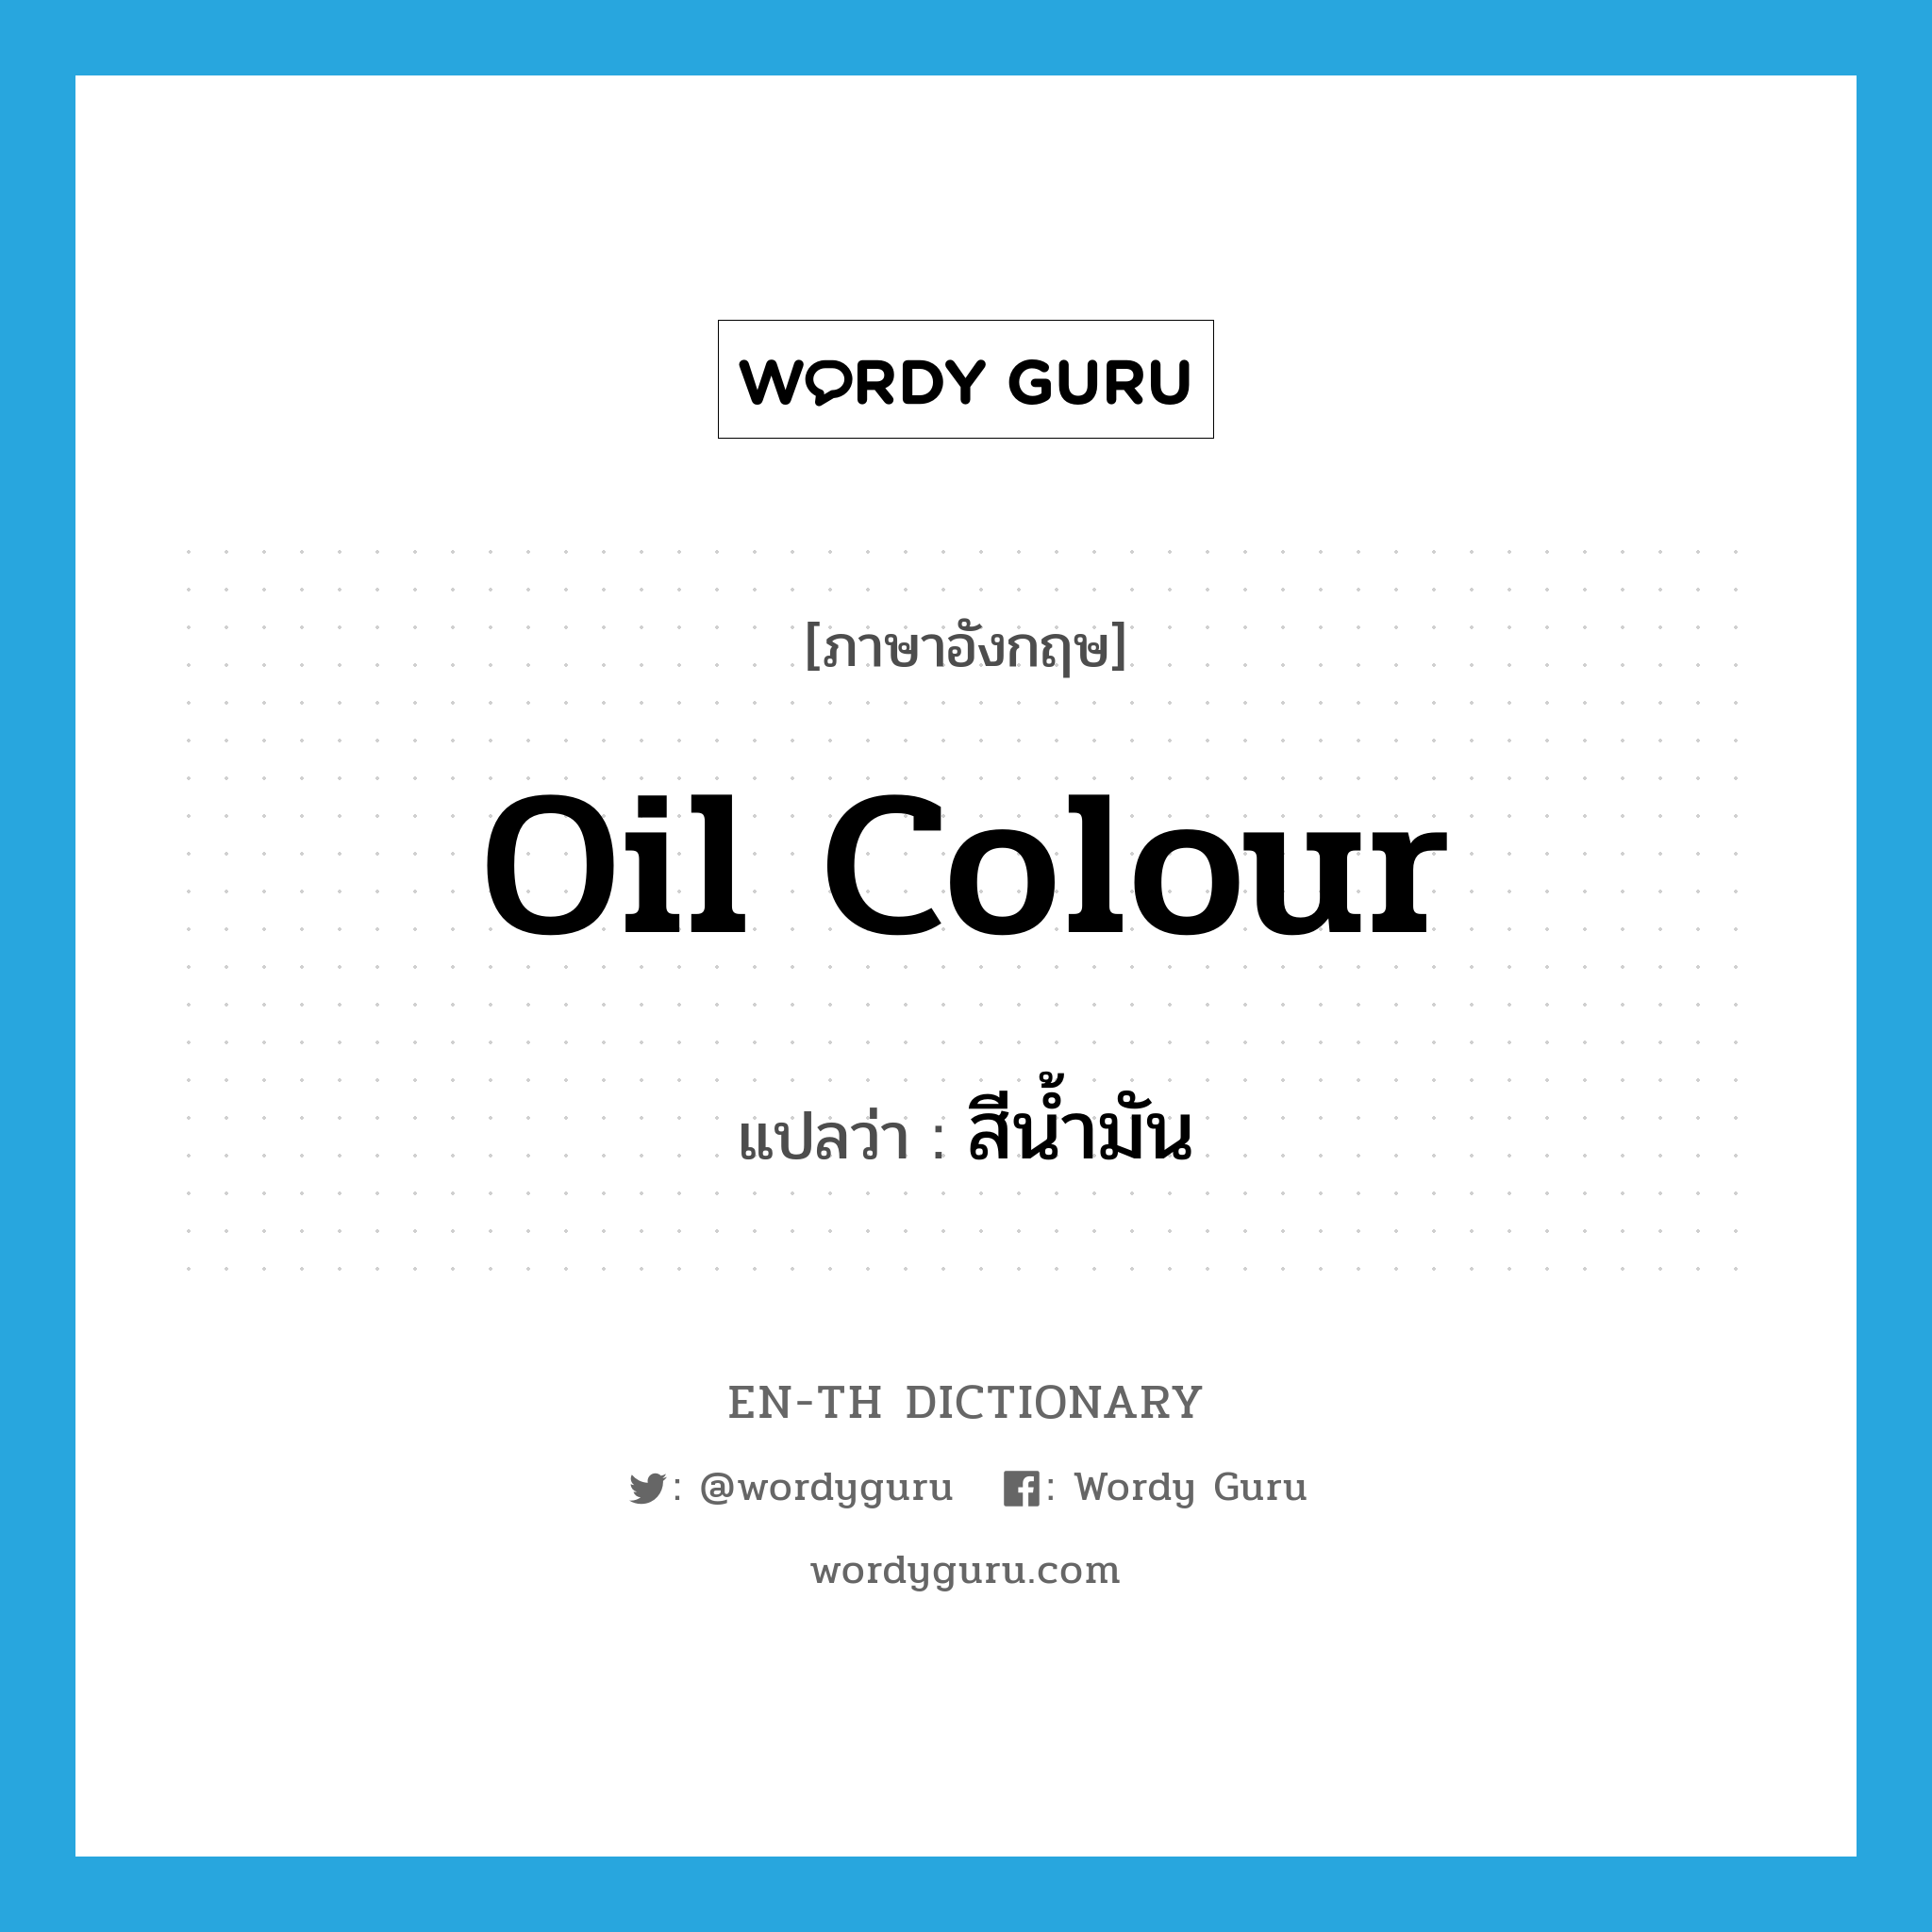 oil colour แปลว่า?, คำศัพท์ภาษาอังกฤษ oil colour แปลว่า สีน้ำมัน ประเภท N หมวด N